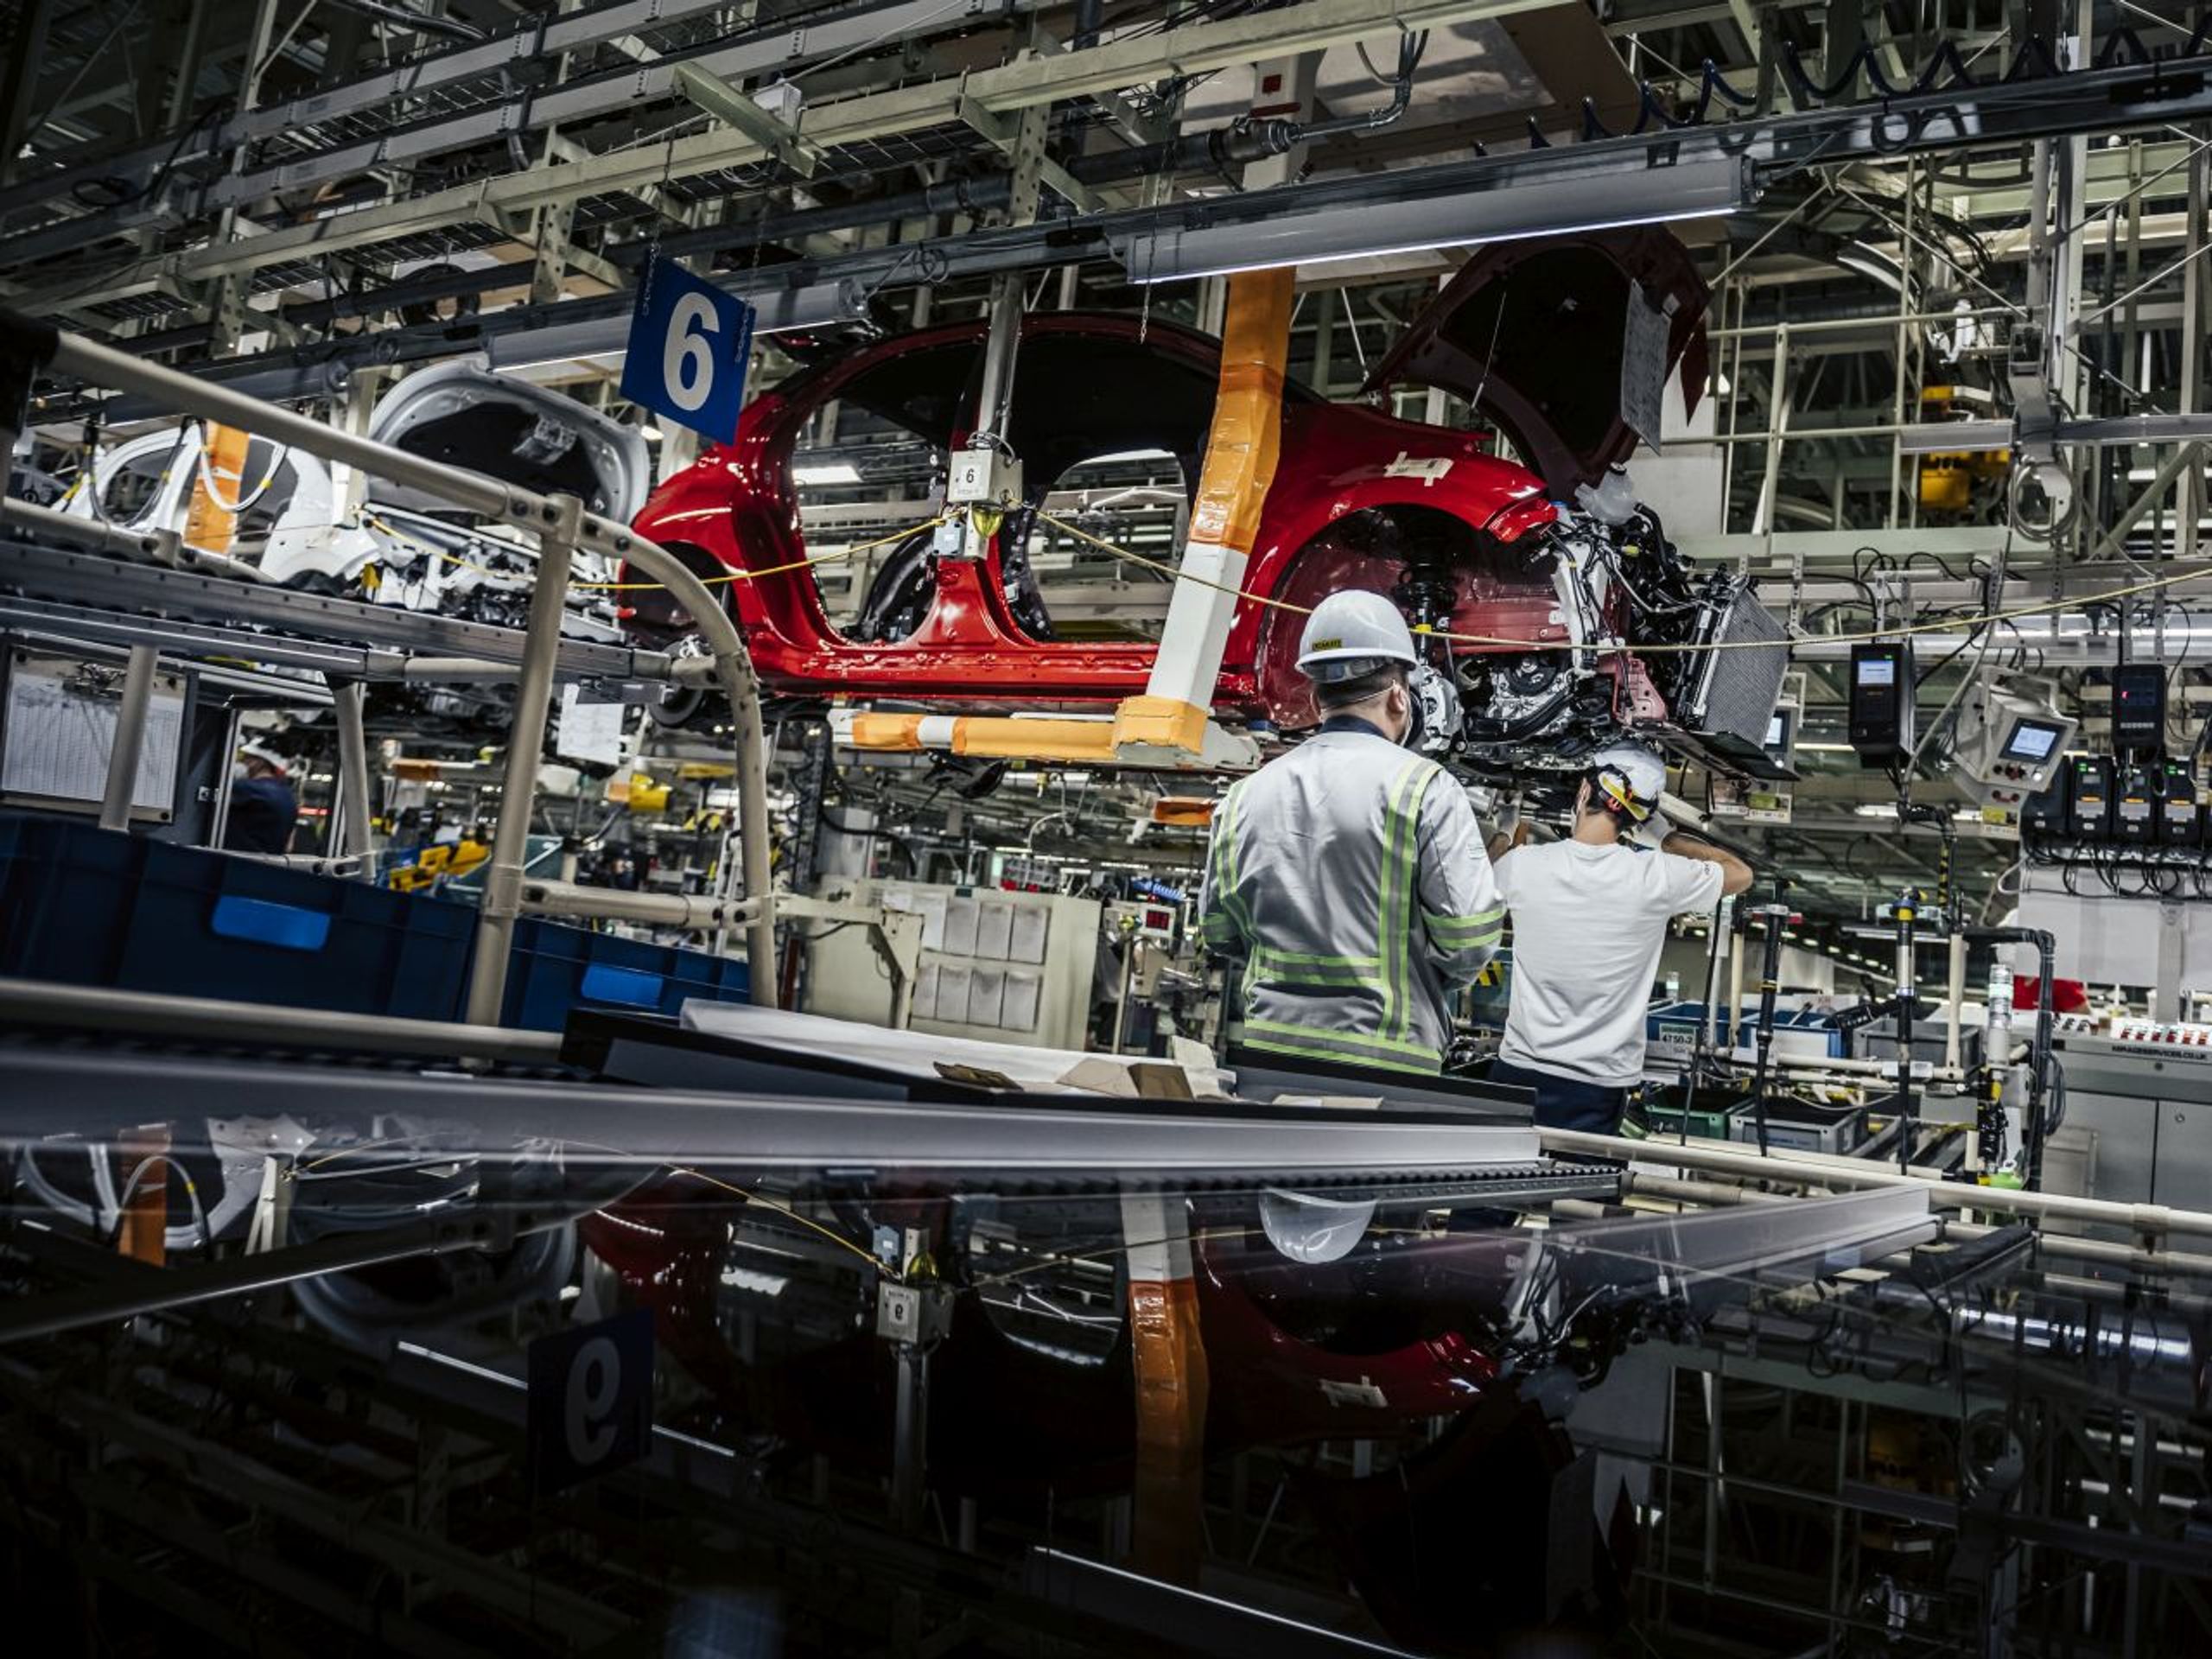 Výroba Toyoty Yaris ve středočeském Kolíně - Podívejte se na výrobní linky Toyoty v Kolíně (1/18)